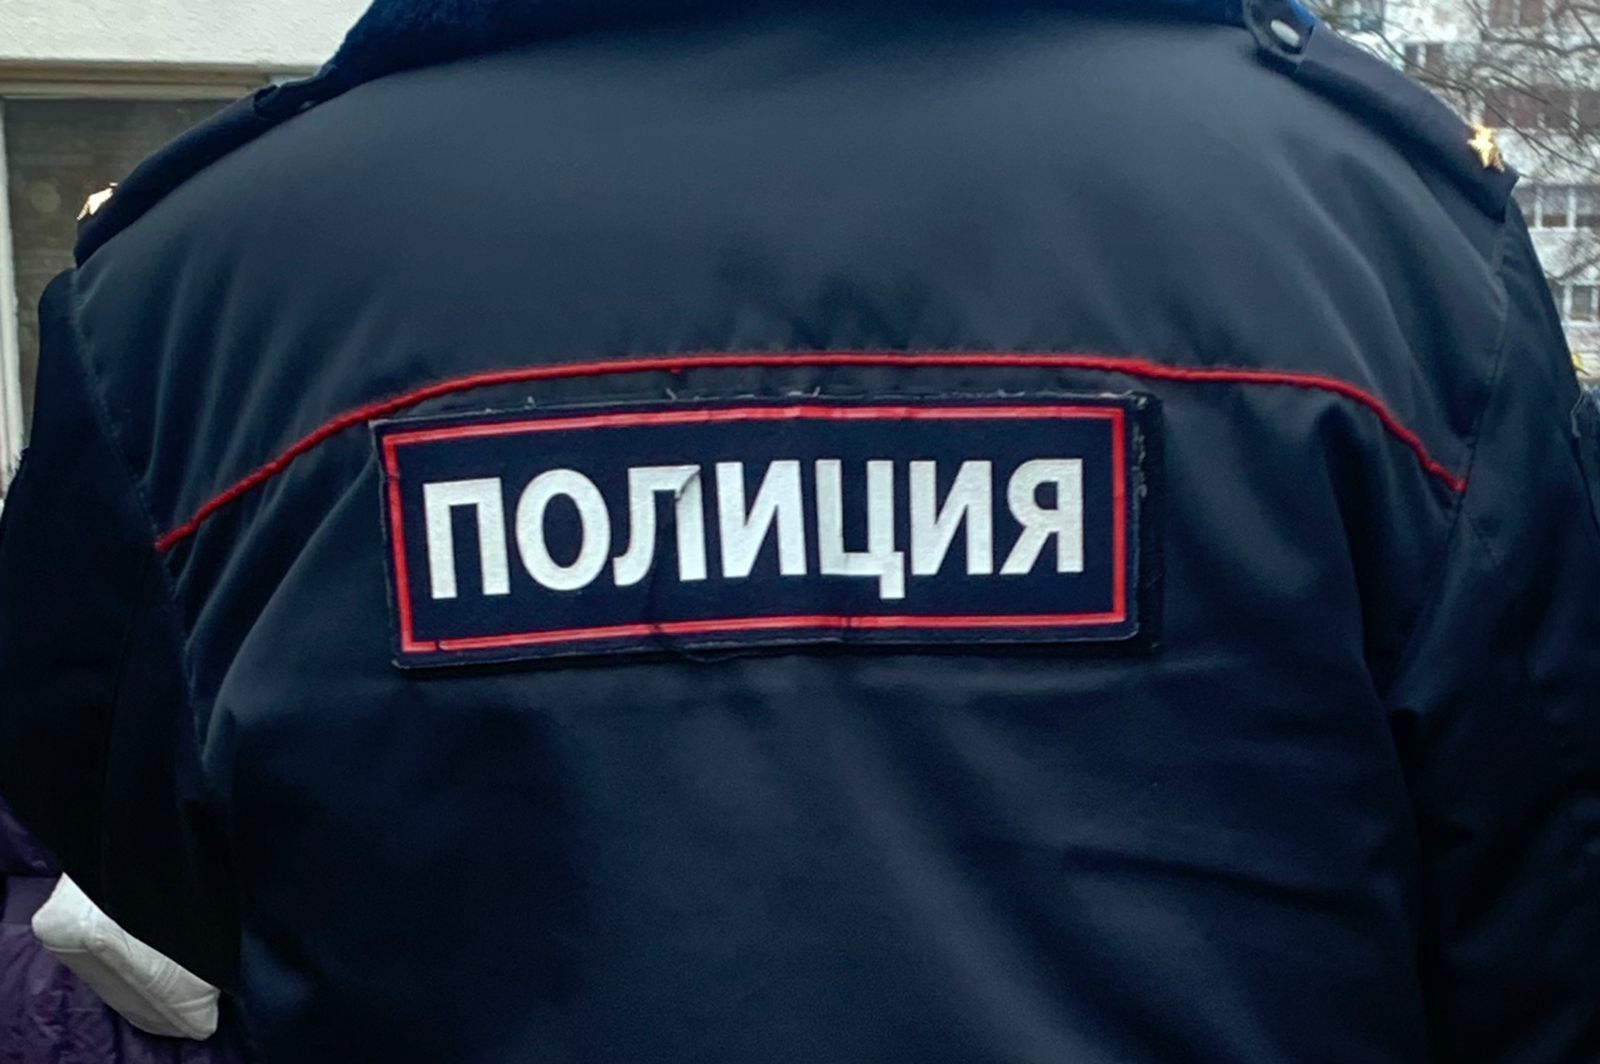 Житель Челнов напал на медиков скорой помощи с ножом